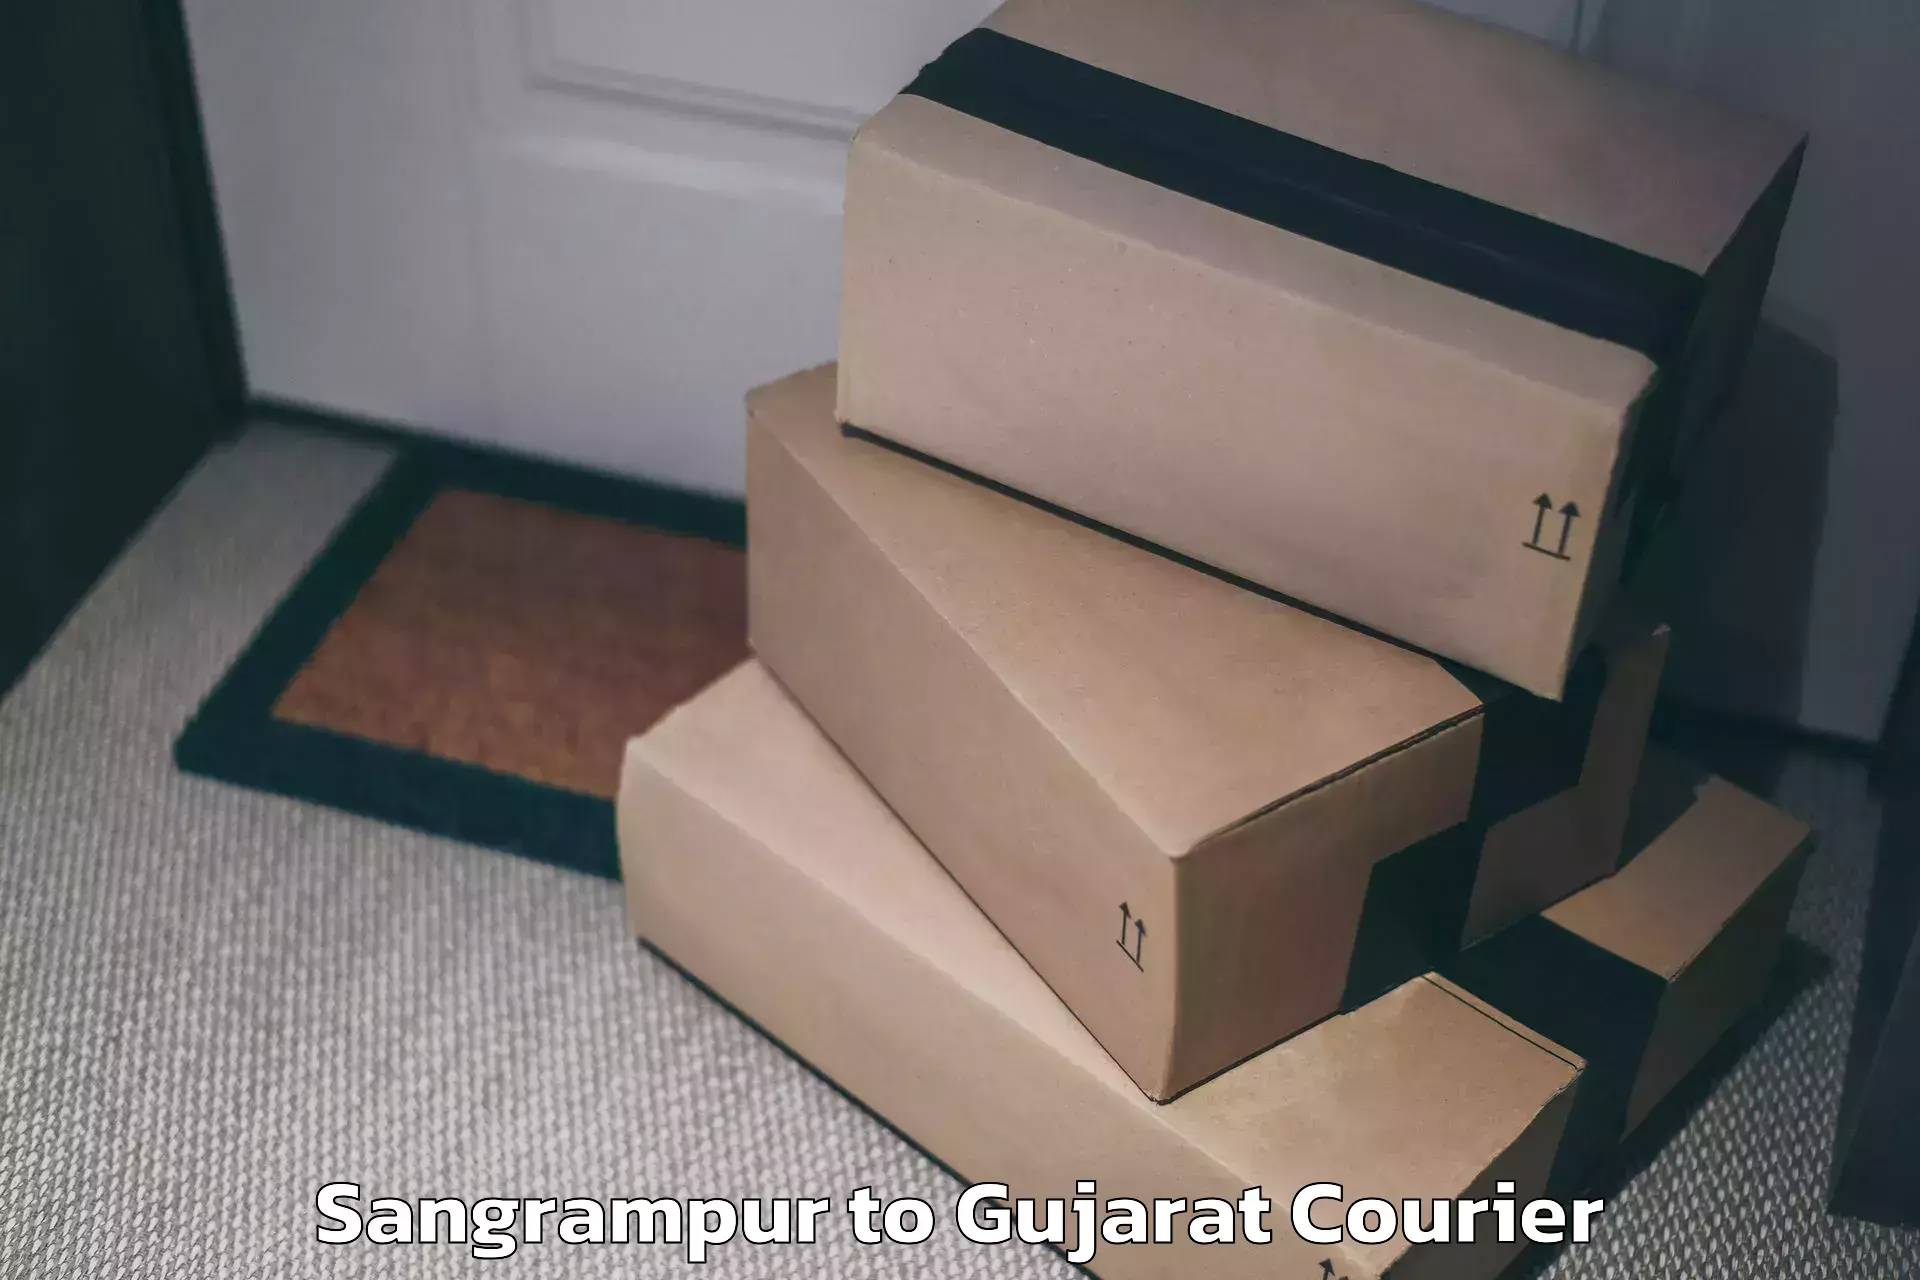 Excess baggage transport Sangrampur to Gujarat